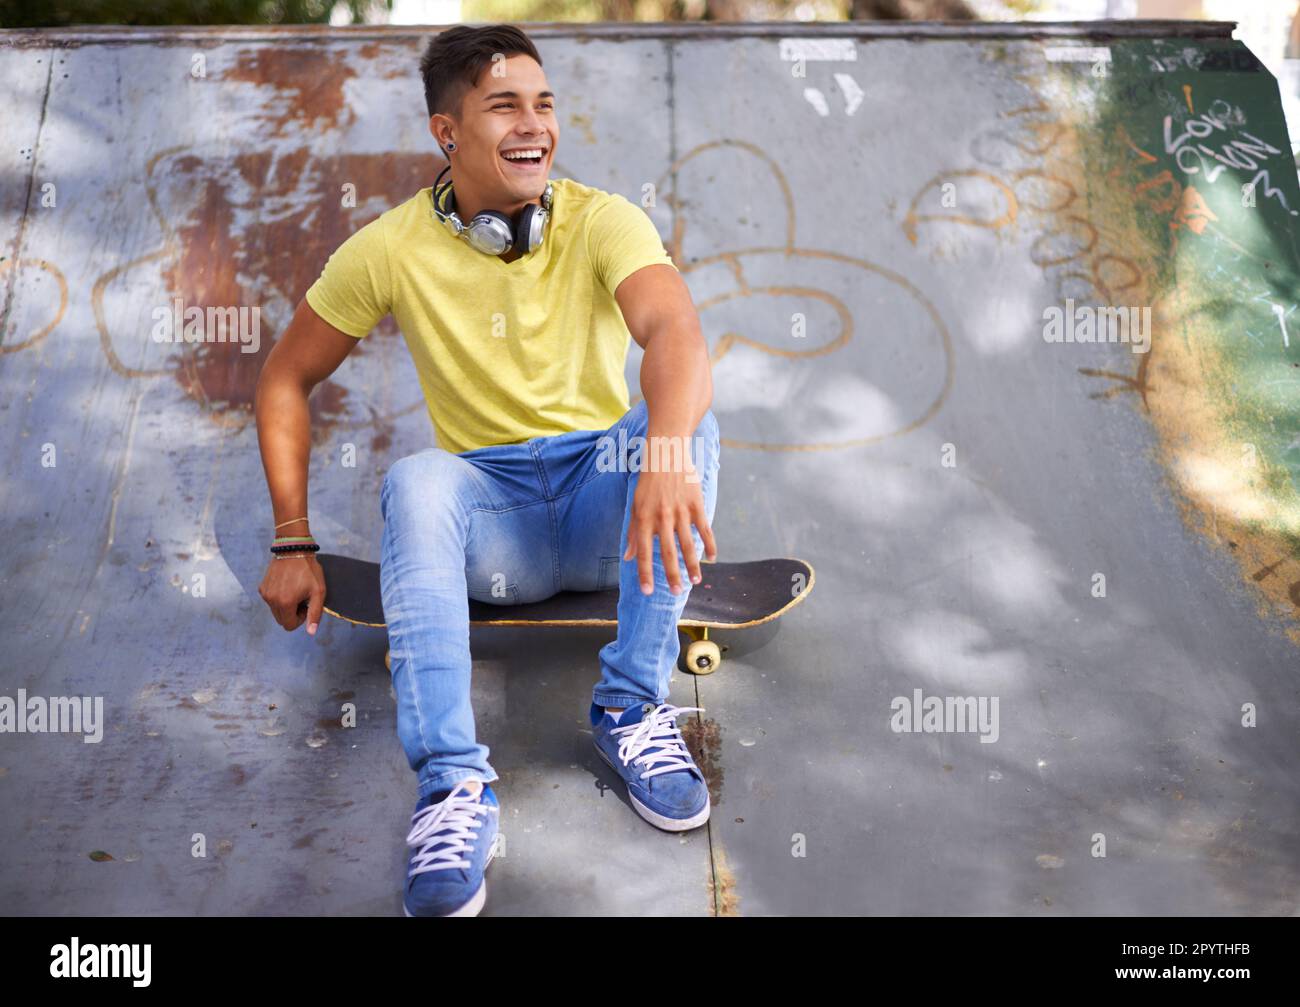 Dévalez la journée au skate Park. un jeune skateboarder se détendant dans un parc de skate. Banque D'Images